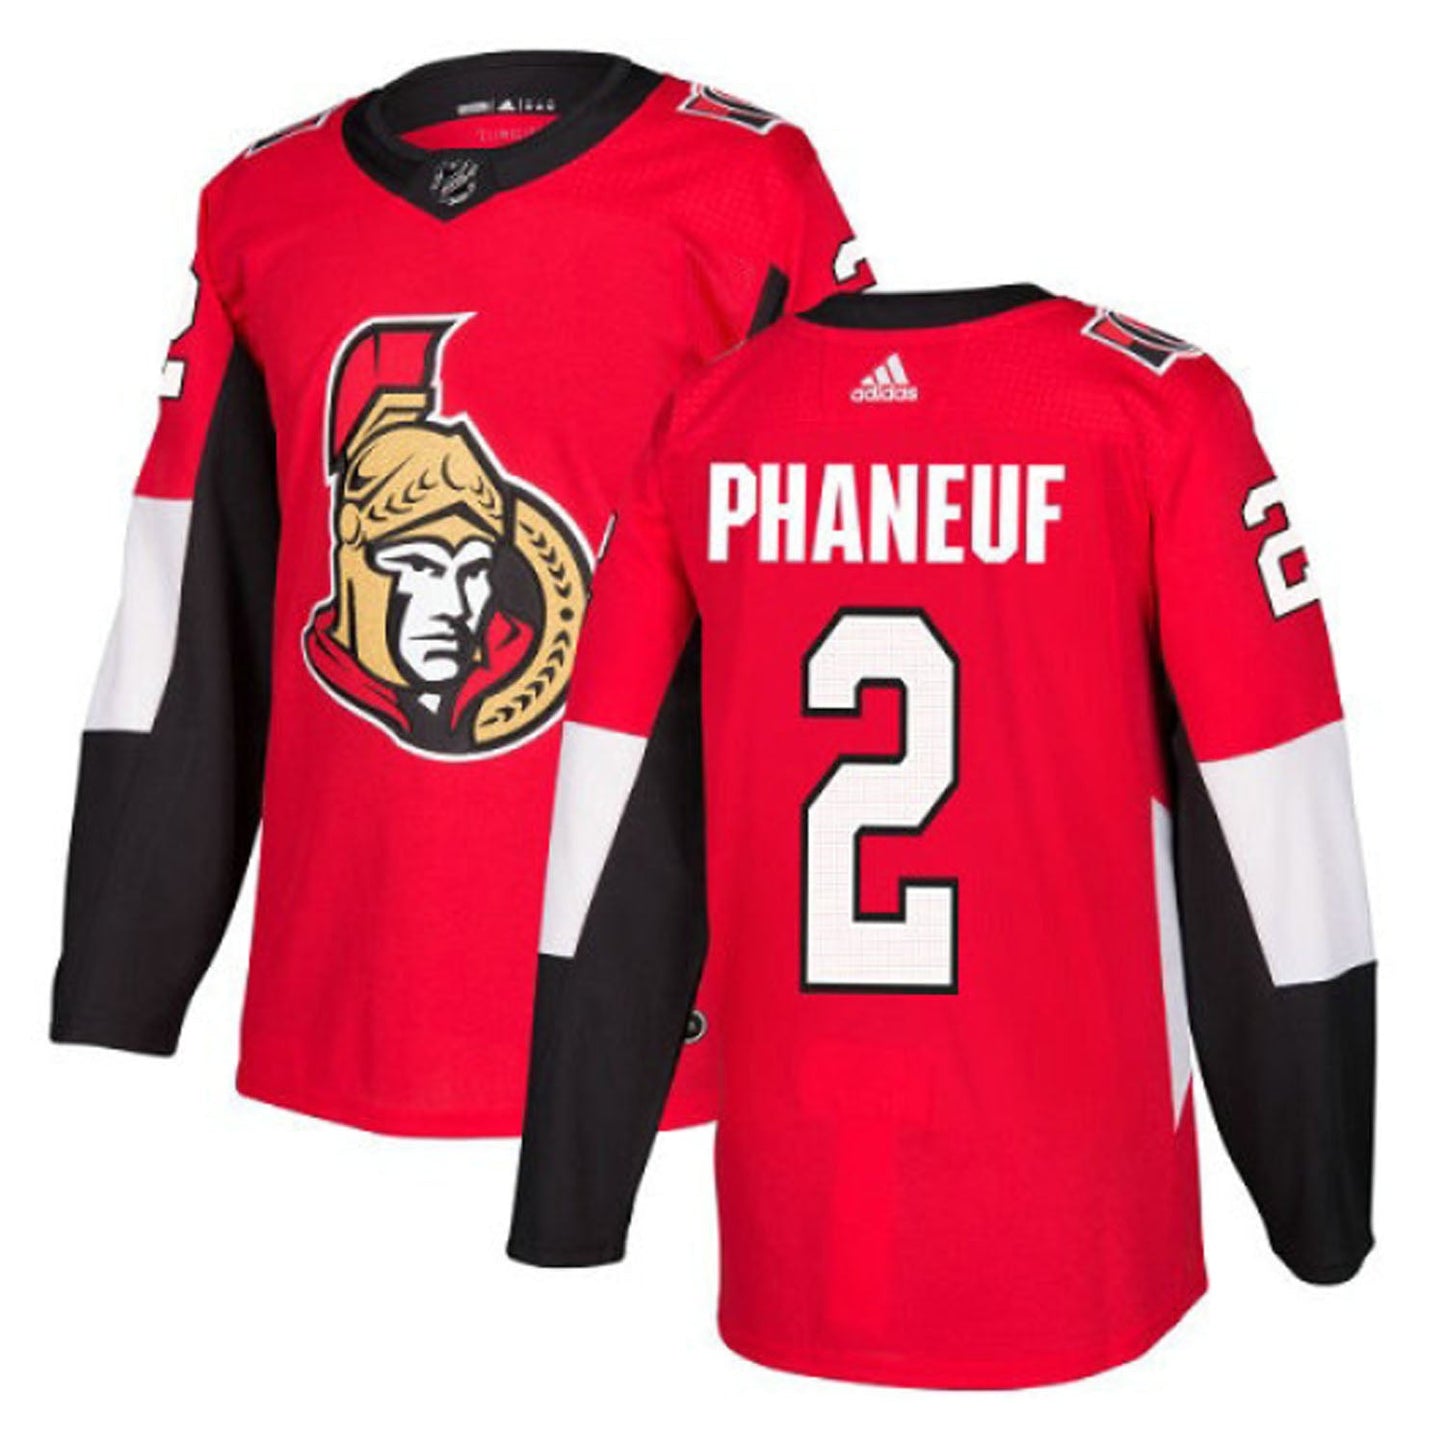 NHL Dion Phaneuf Ottawa Senators 2 Jersey